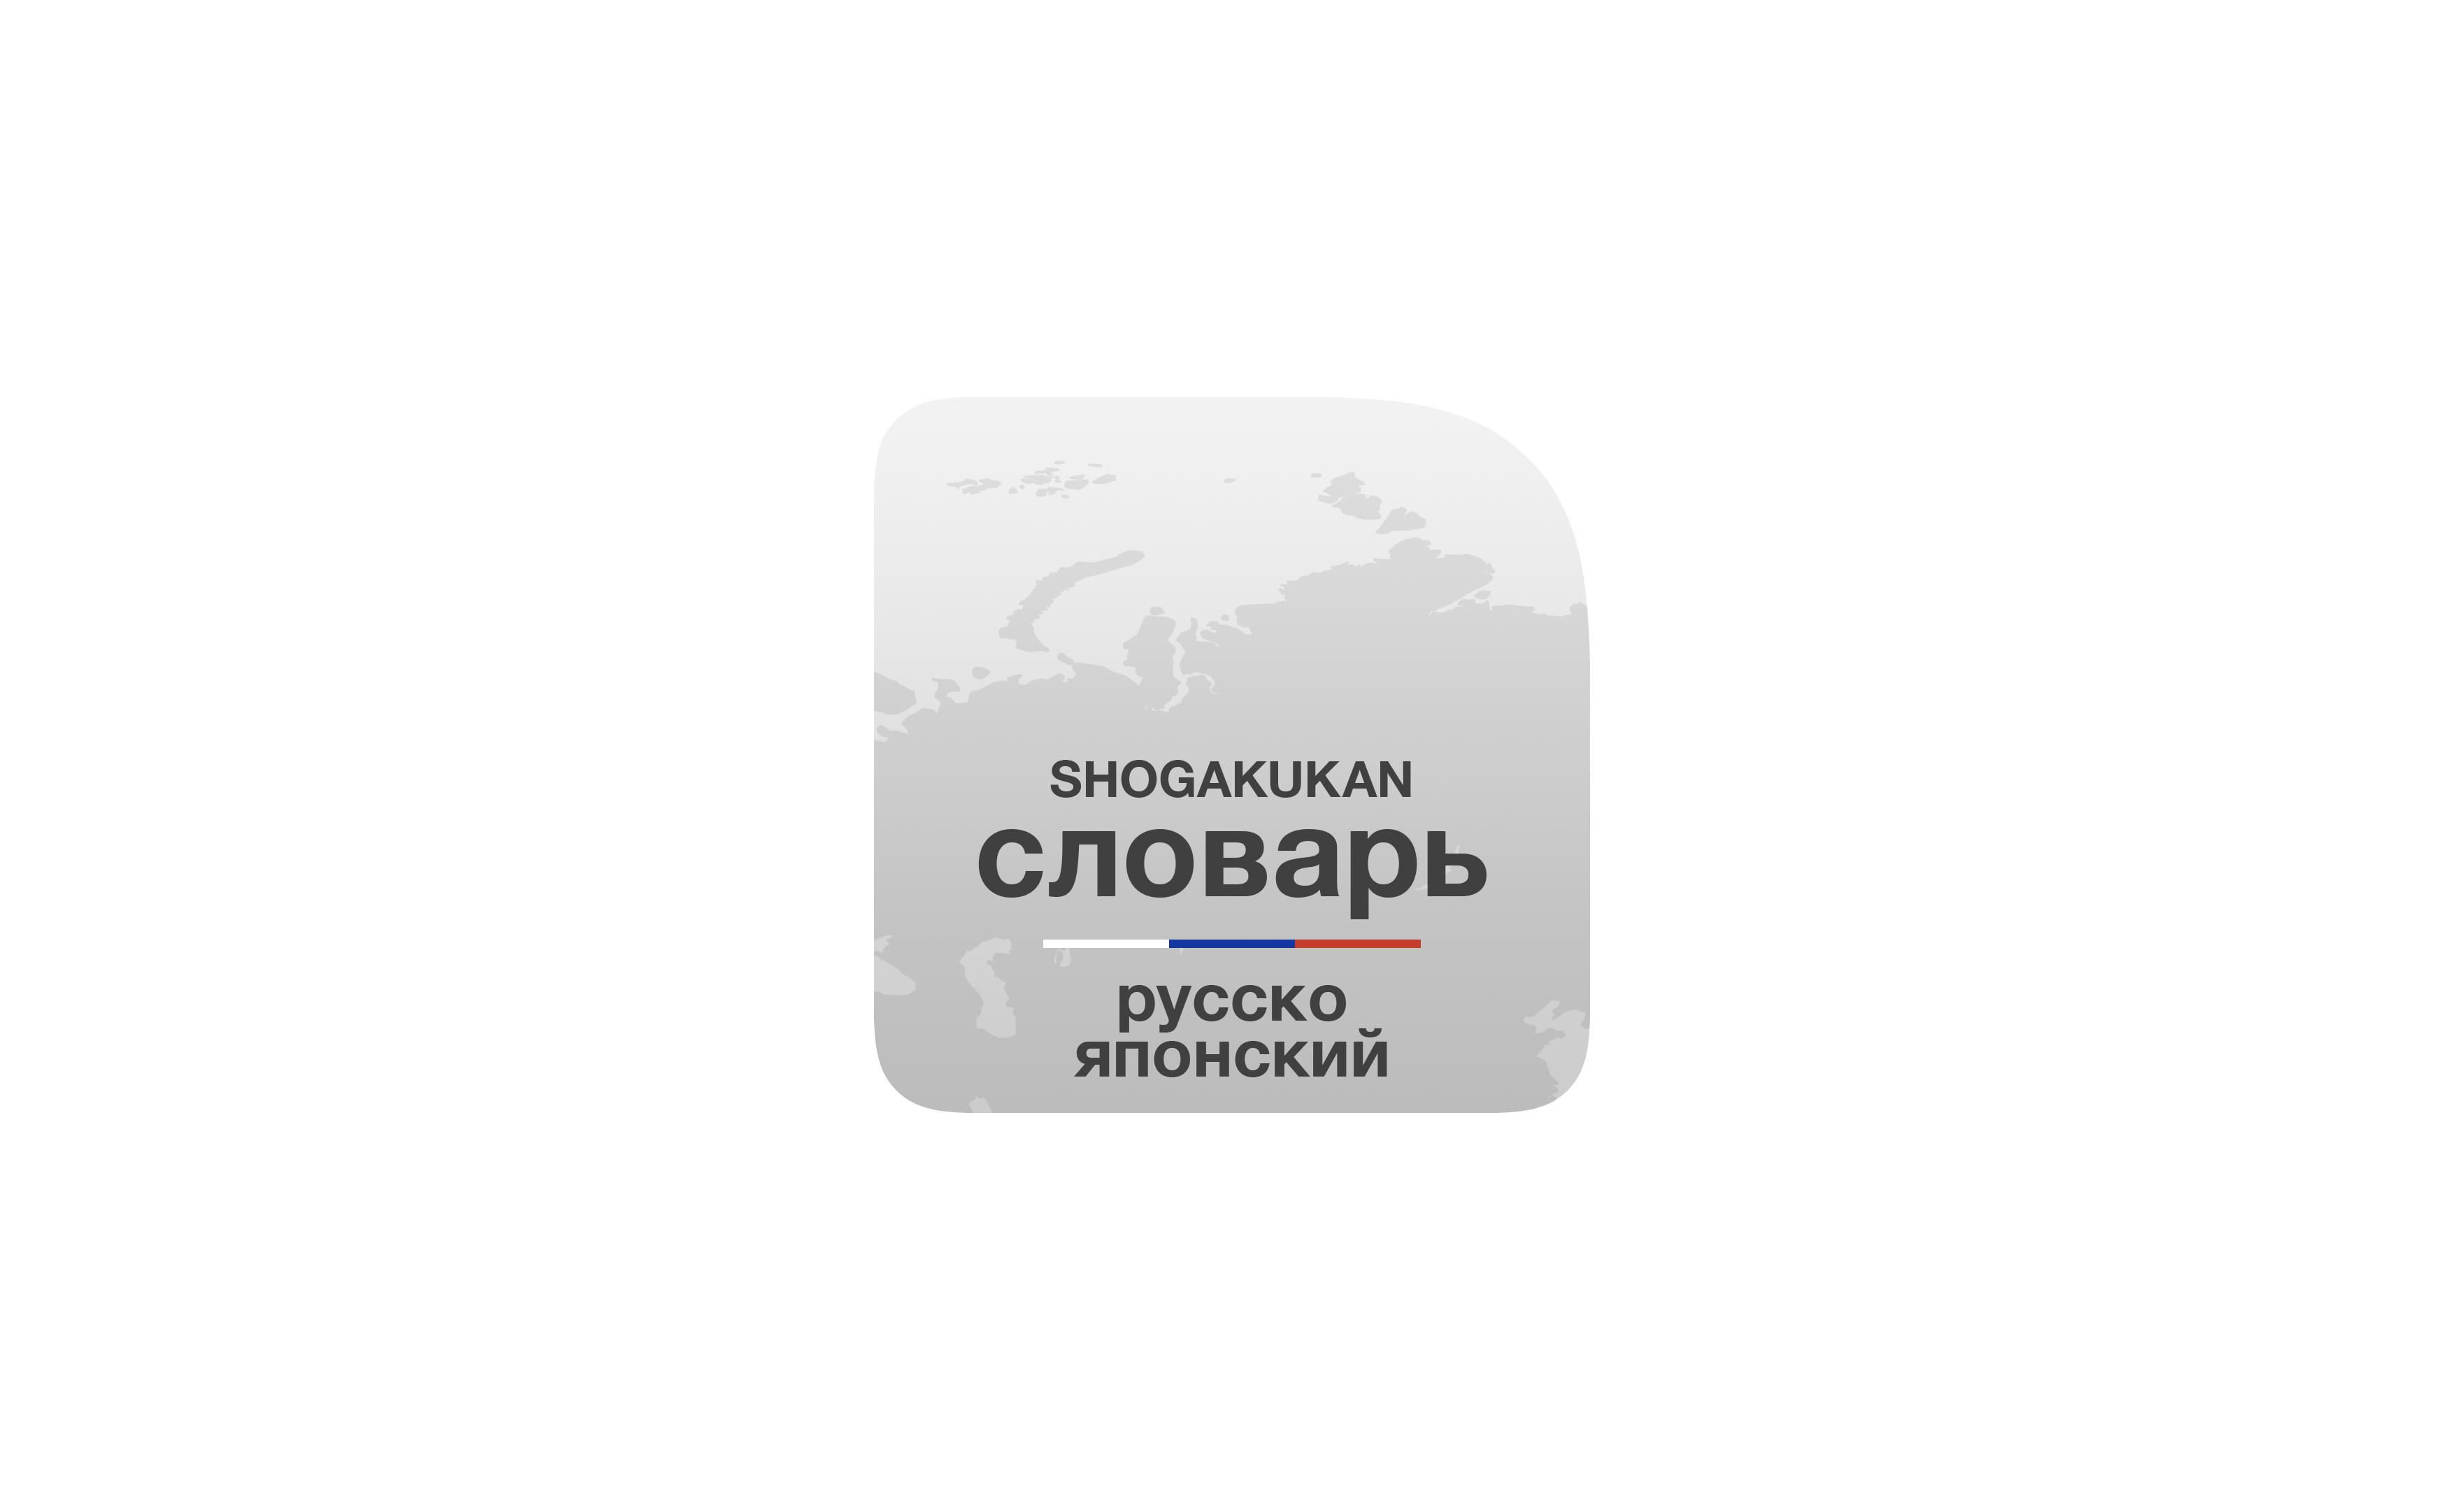 プログレッシブ ロシア語辞典